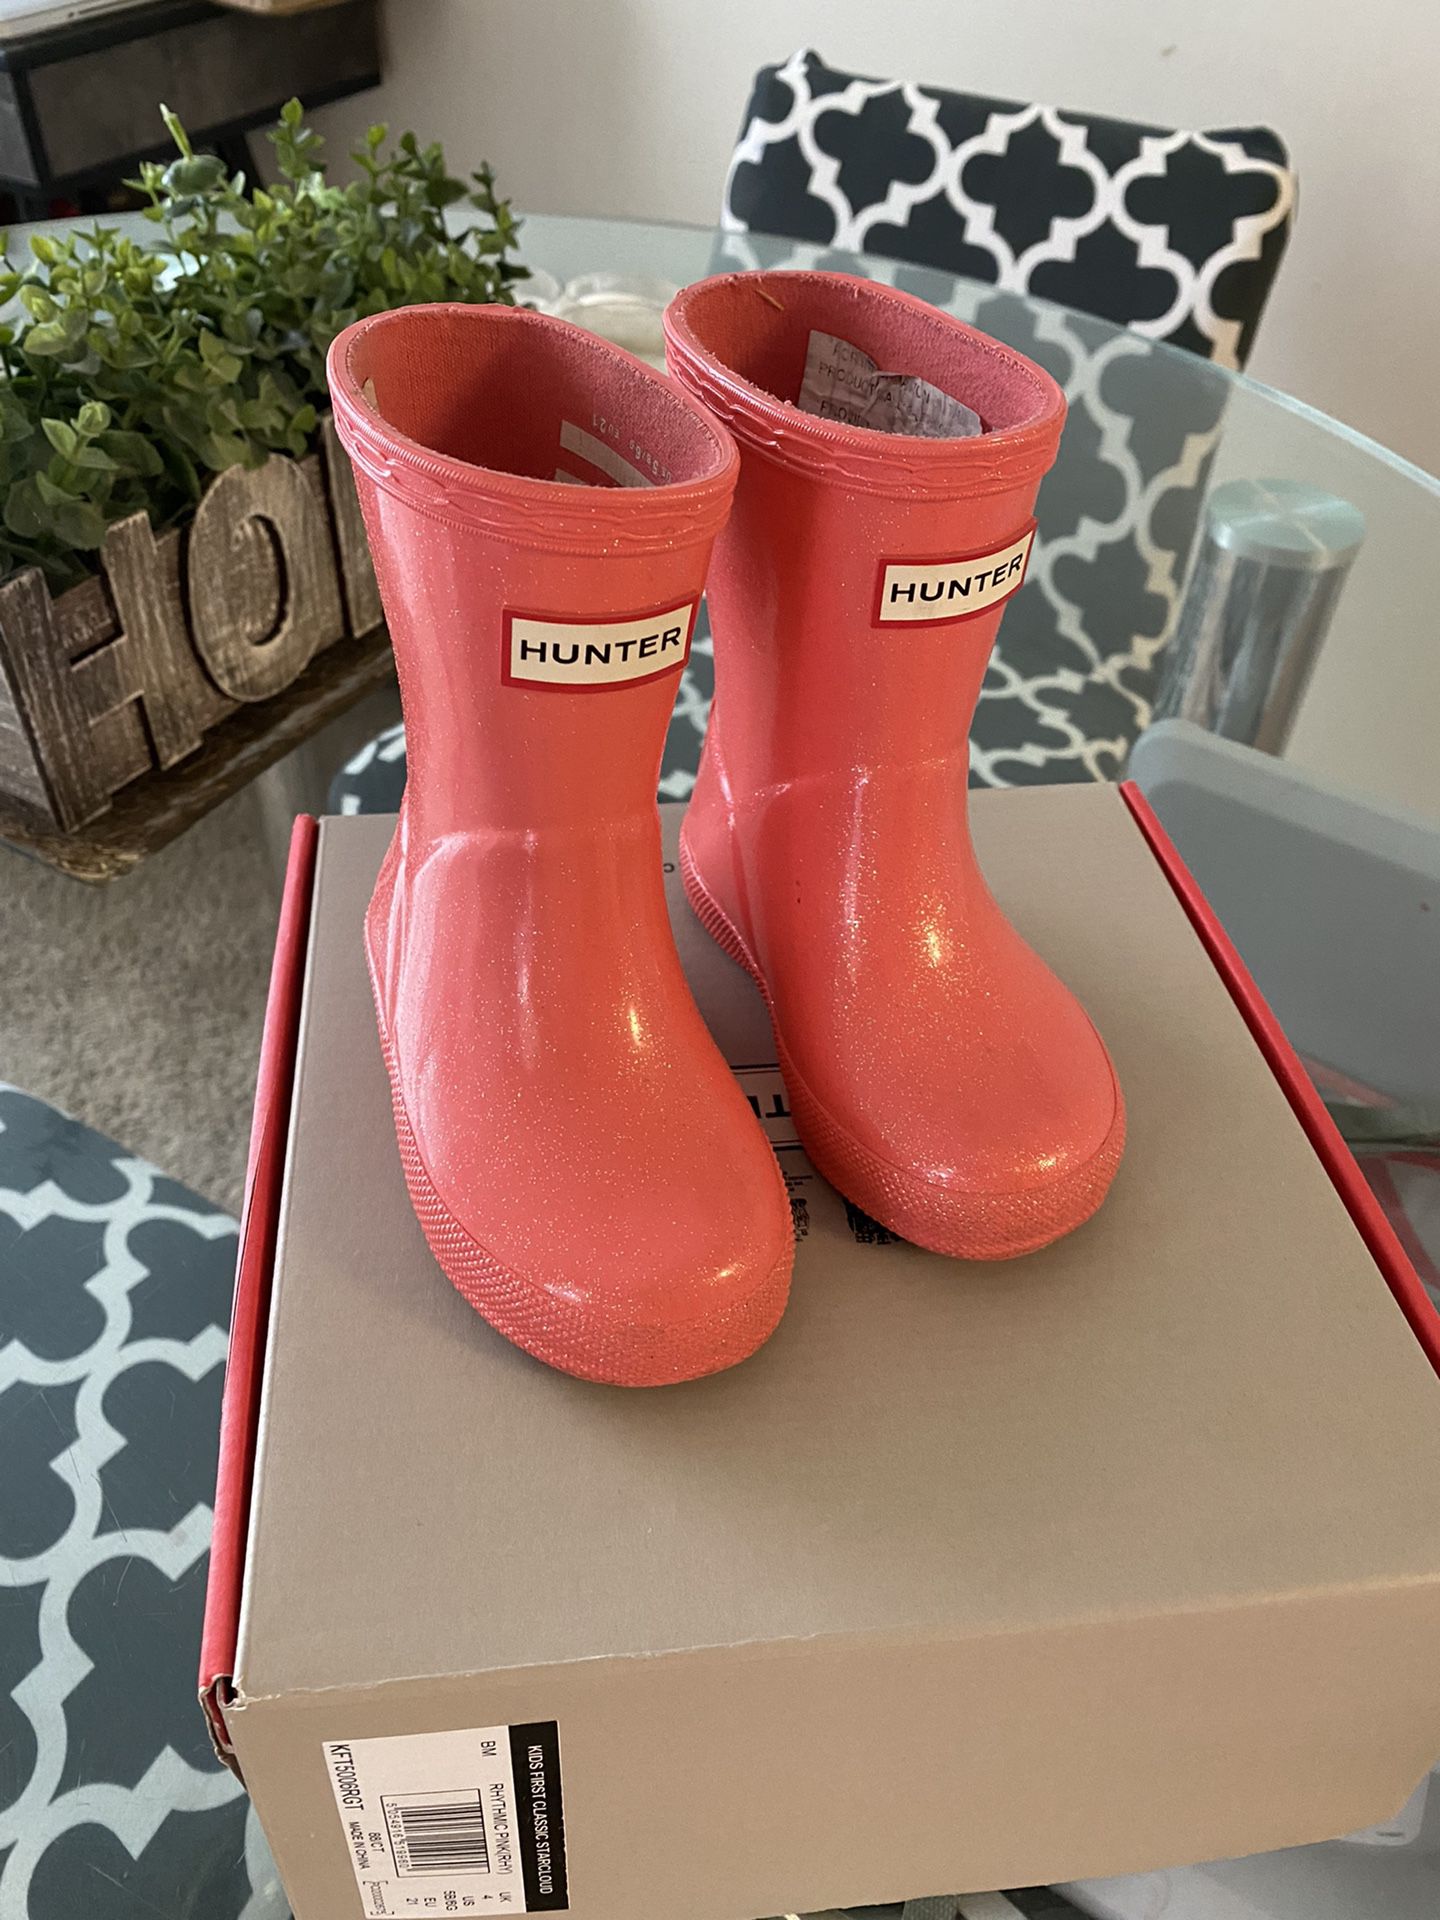 Toddler Hunter Rain Boots Size 5/6 Rain Jacket Size 12/18